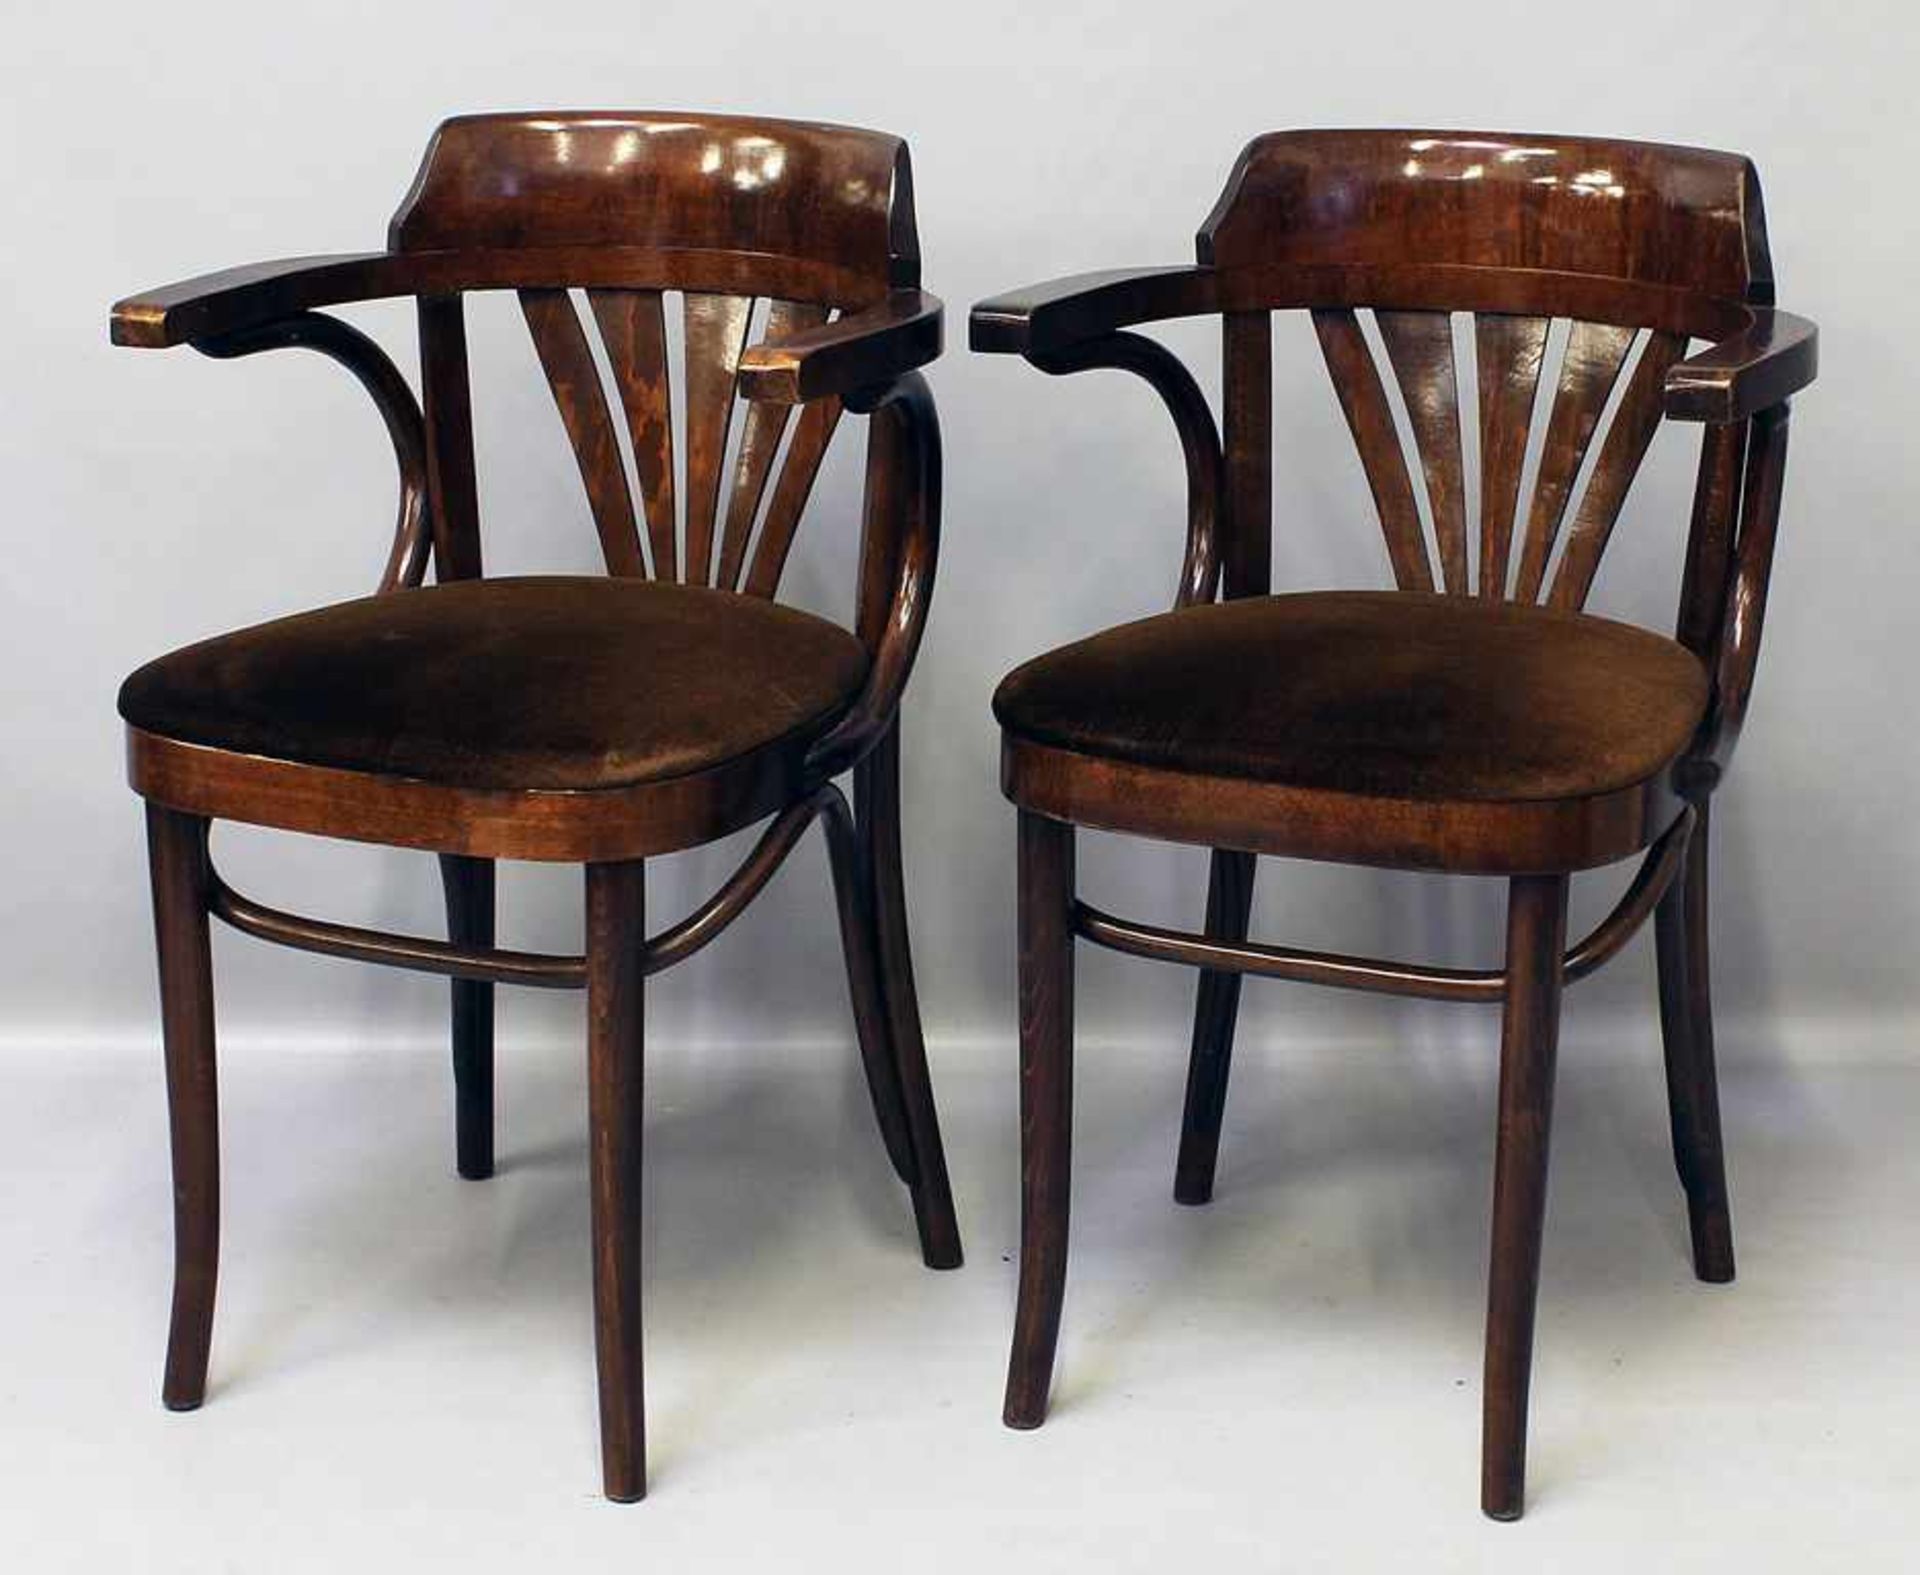 Paar Bugholzstühle.Hölzerne Armlehnstühle mit gepolsterter Sitzfläche, brauner Textilbezug.